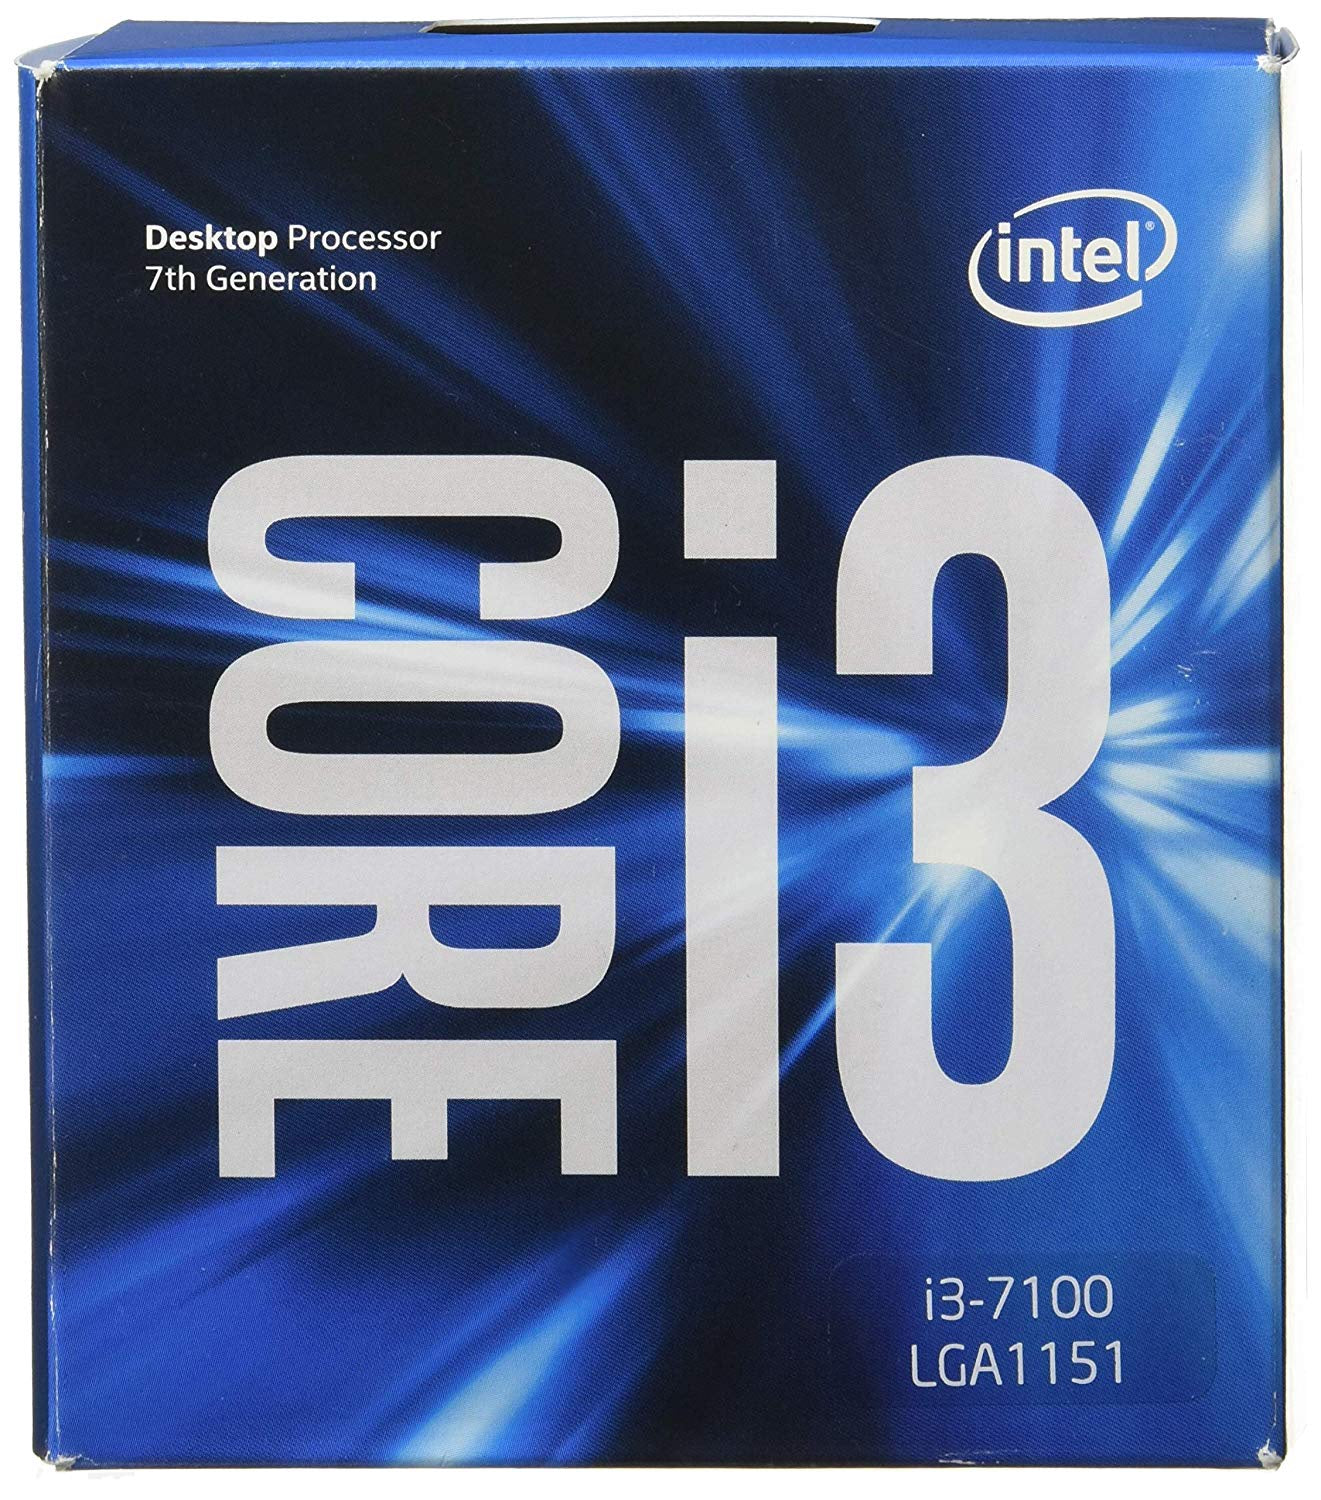 Intel_ïë Core¢_‹_ï¢ i3-7100 Processor (3M Cache, 3.90 GHz)